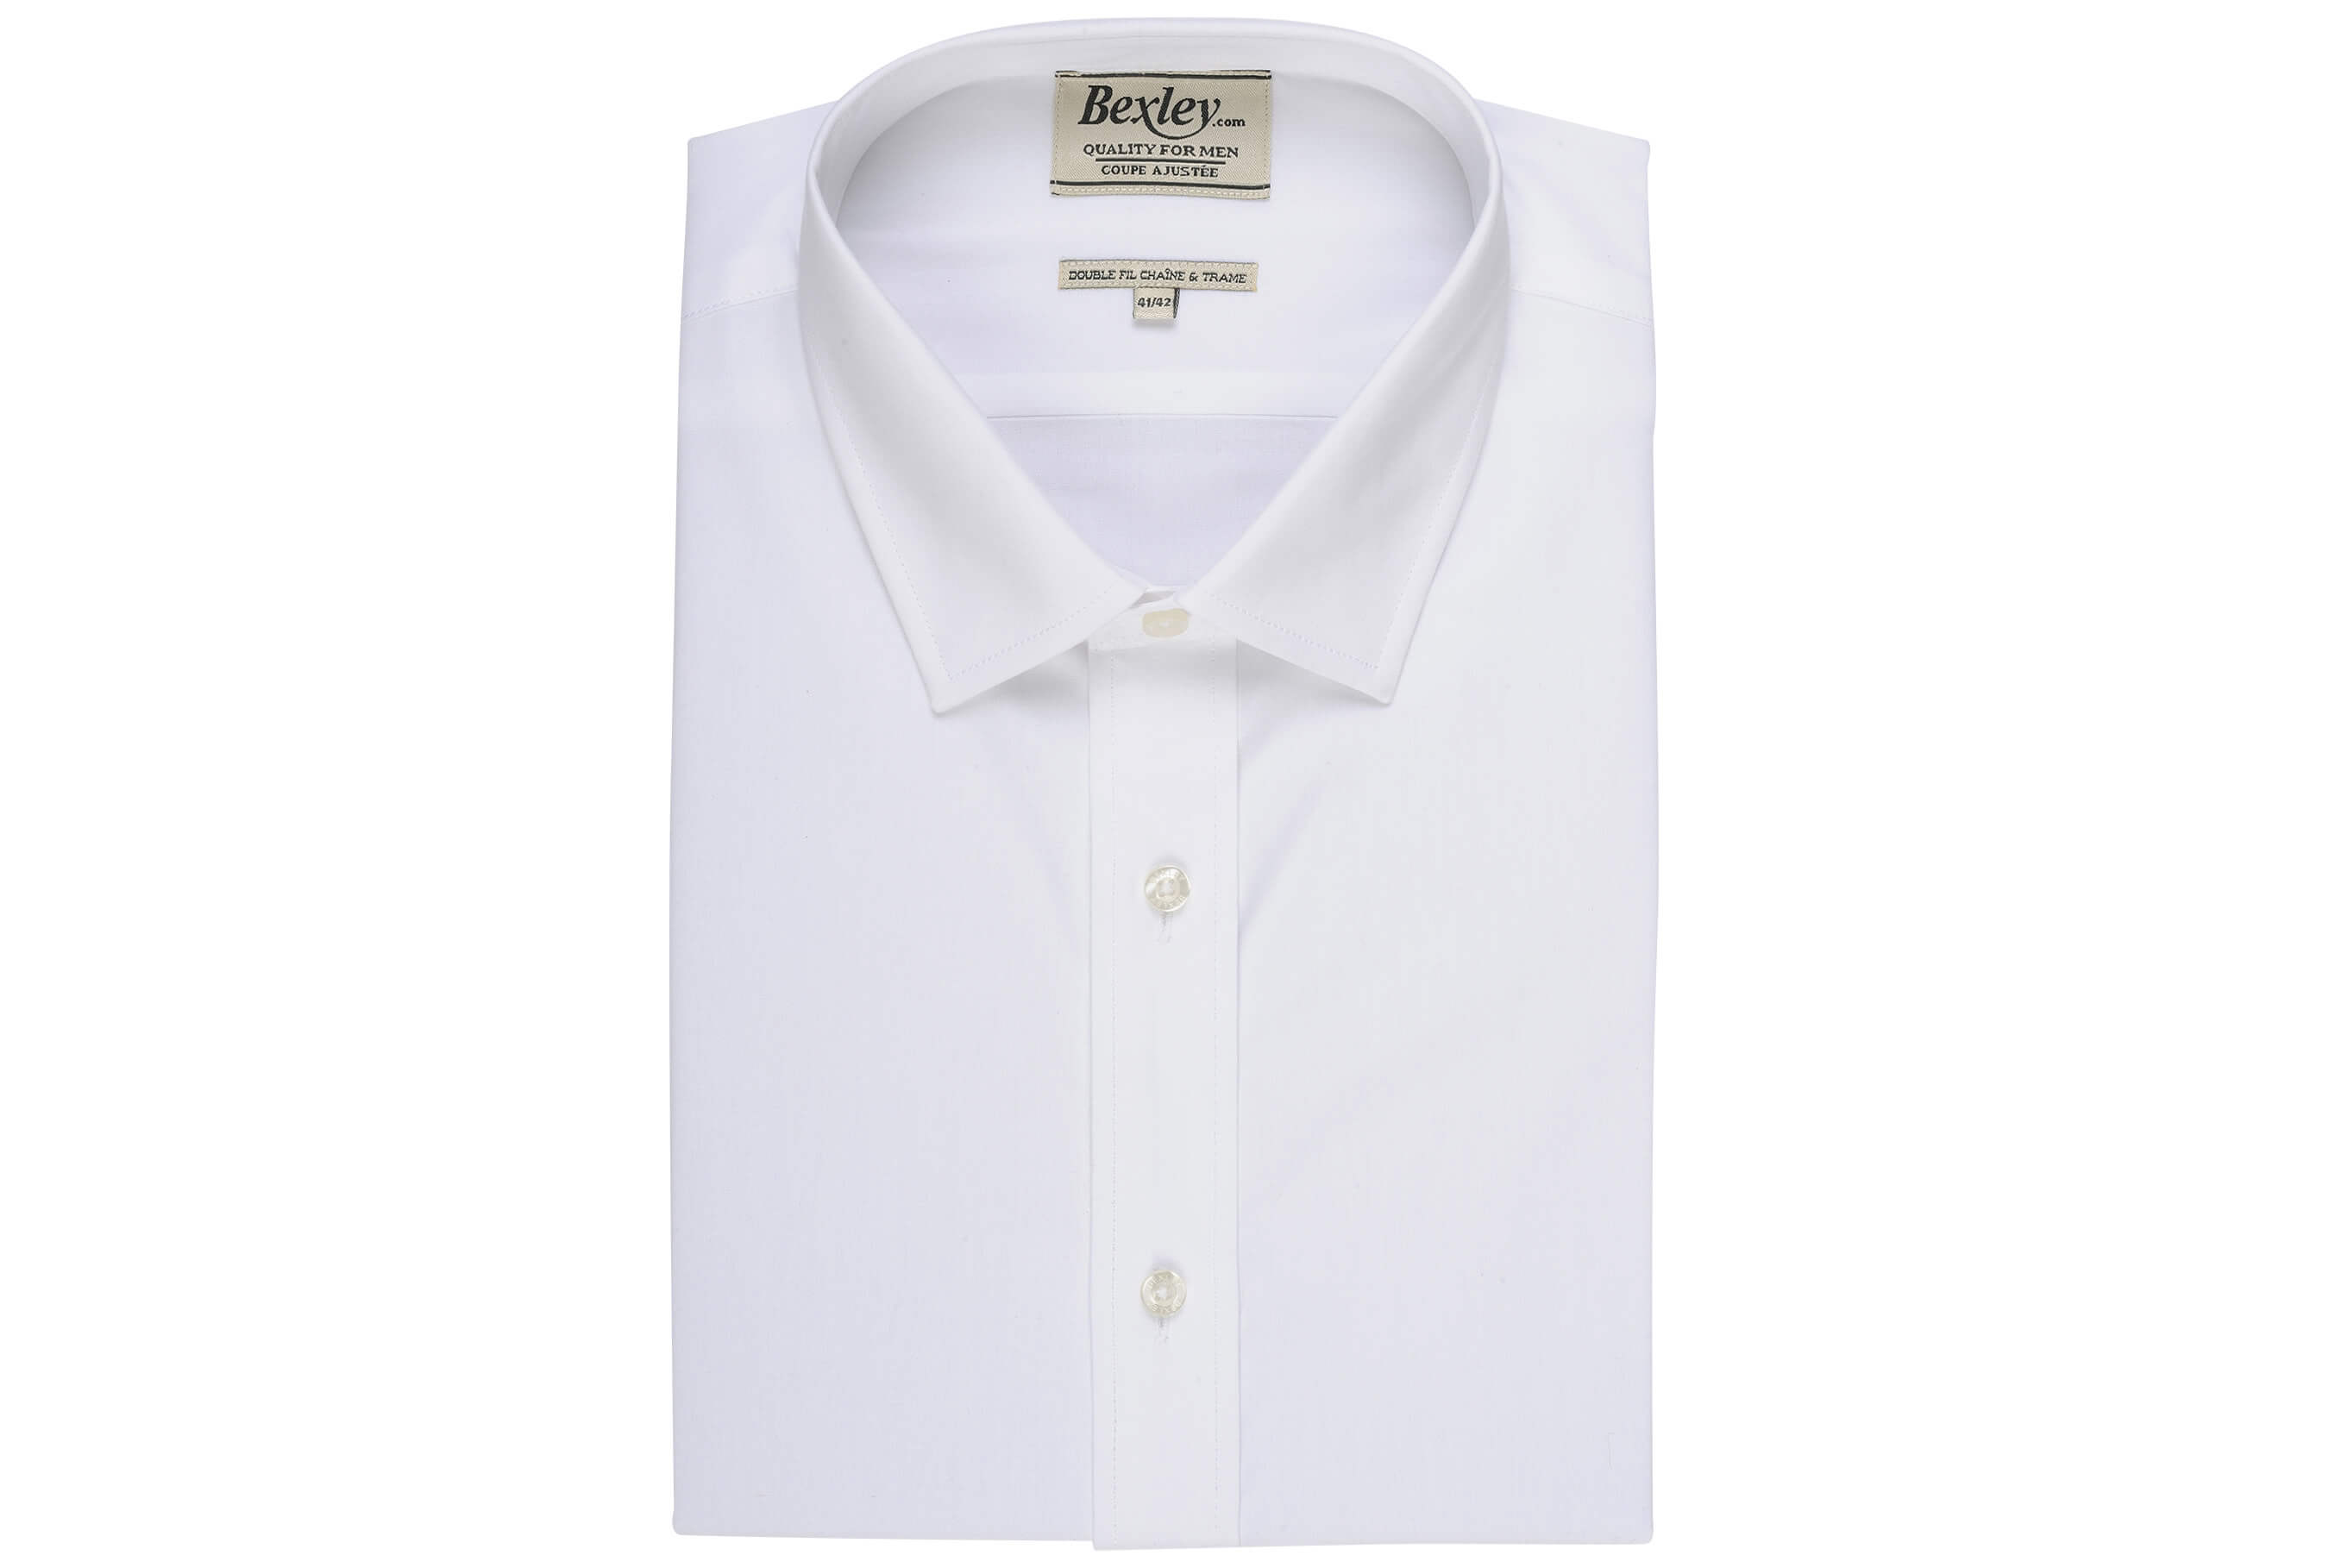 bexley chemise homme 100% coton, blanc, manches longues, coupe cintrée